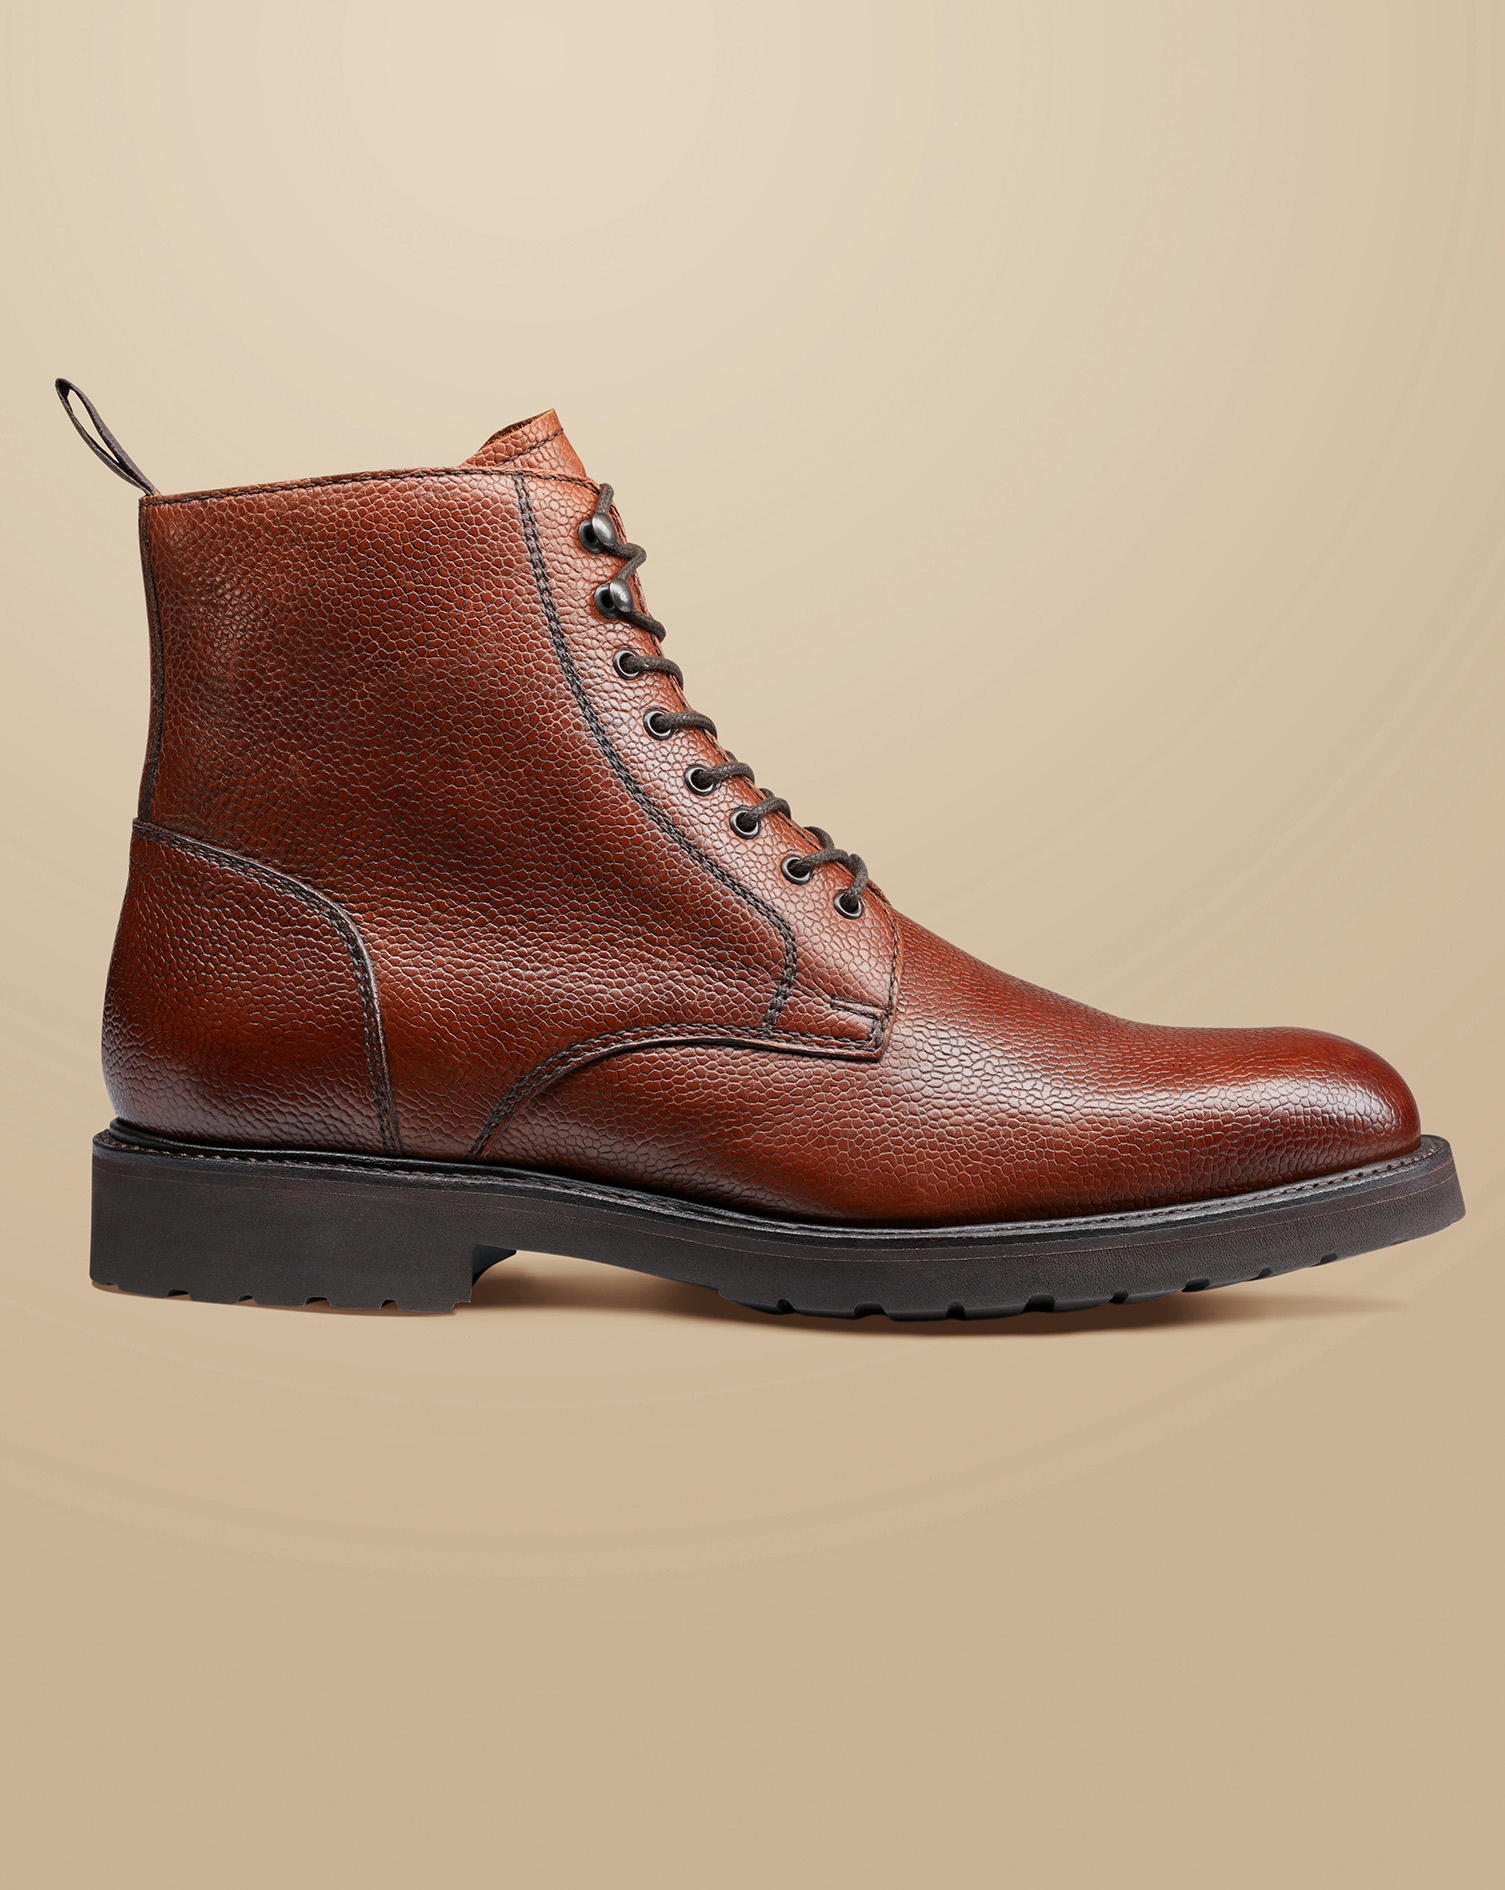 Men's Charles Tyrwhitt Grain Leather Boots - Chestnut Brown Size 10
